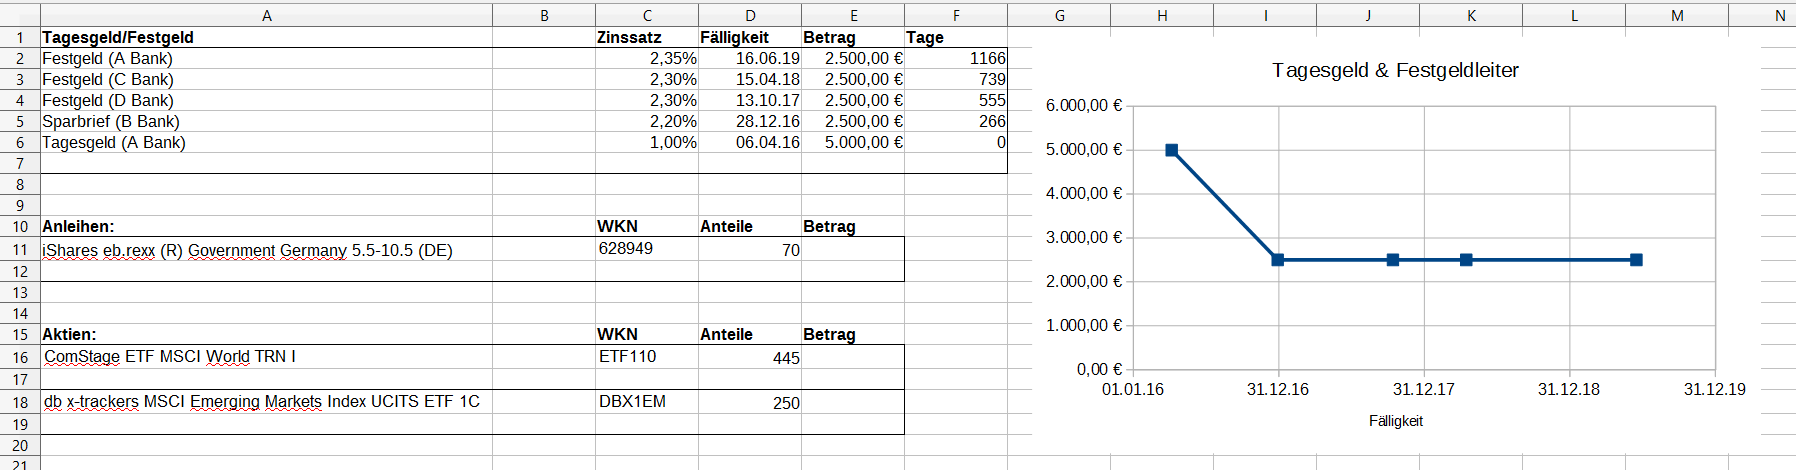 Finanzen mit Excel Teil 3